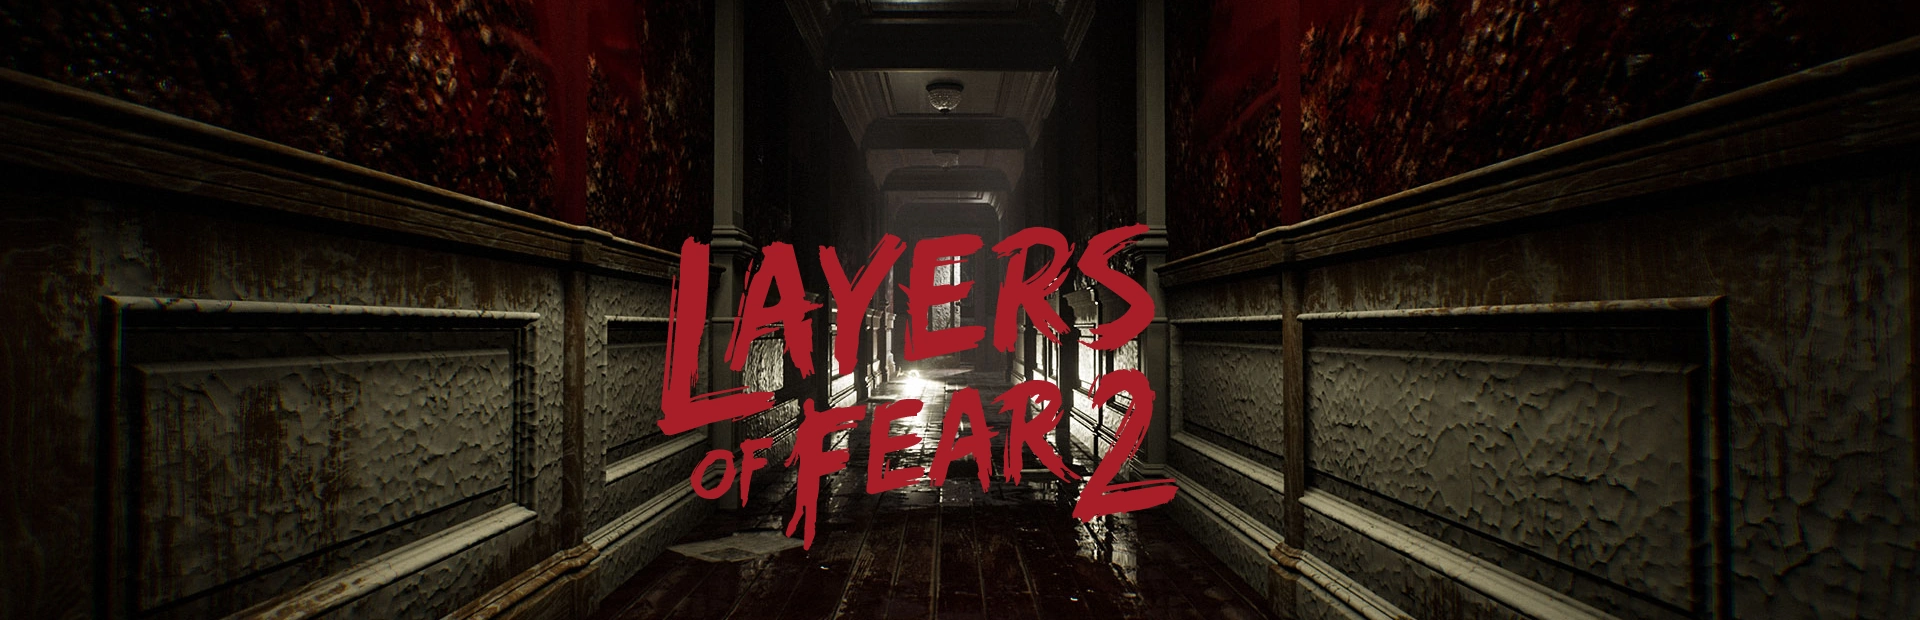 دانلود بازی Layers of Fear 2 برای کامپیوتر | گیمباتو